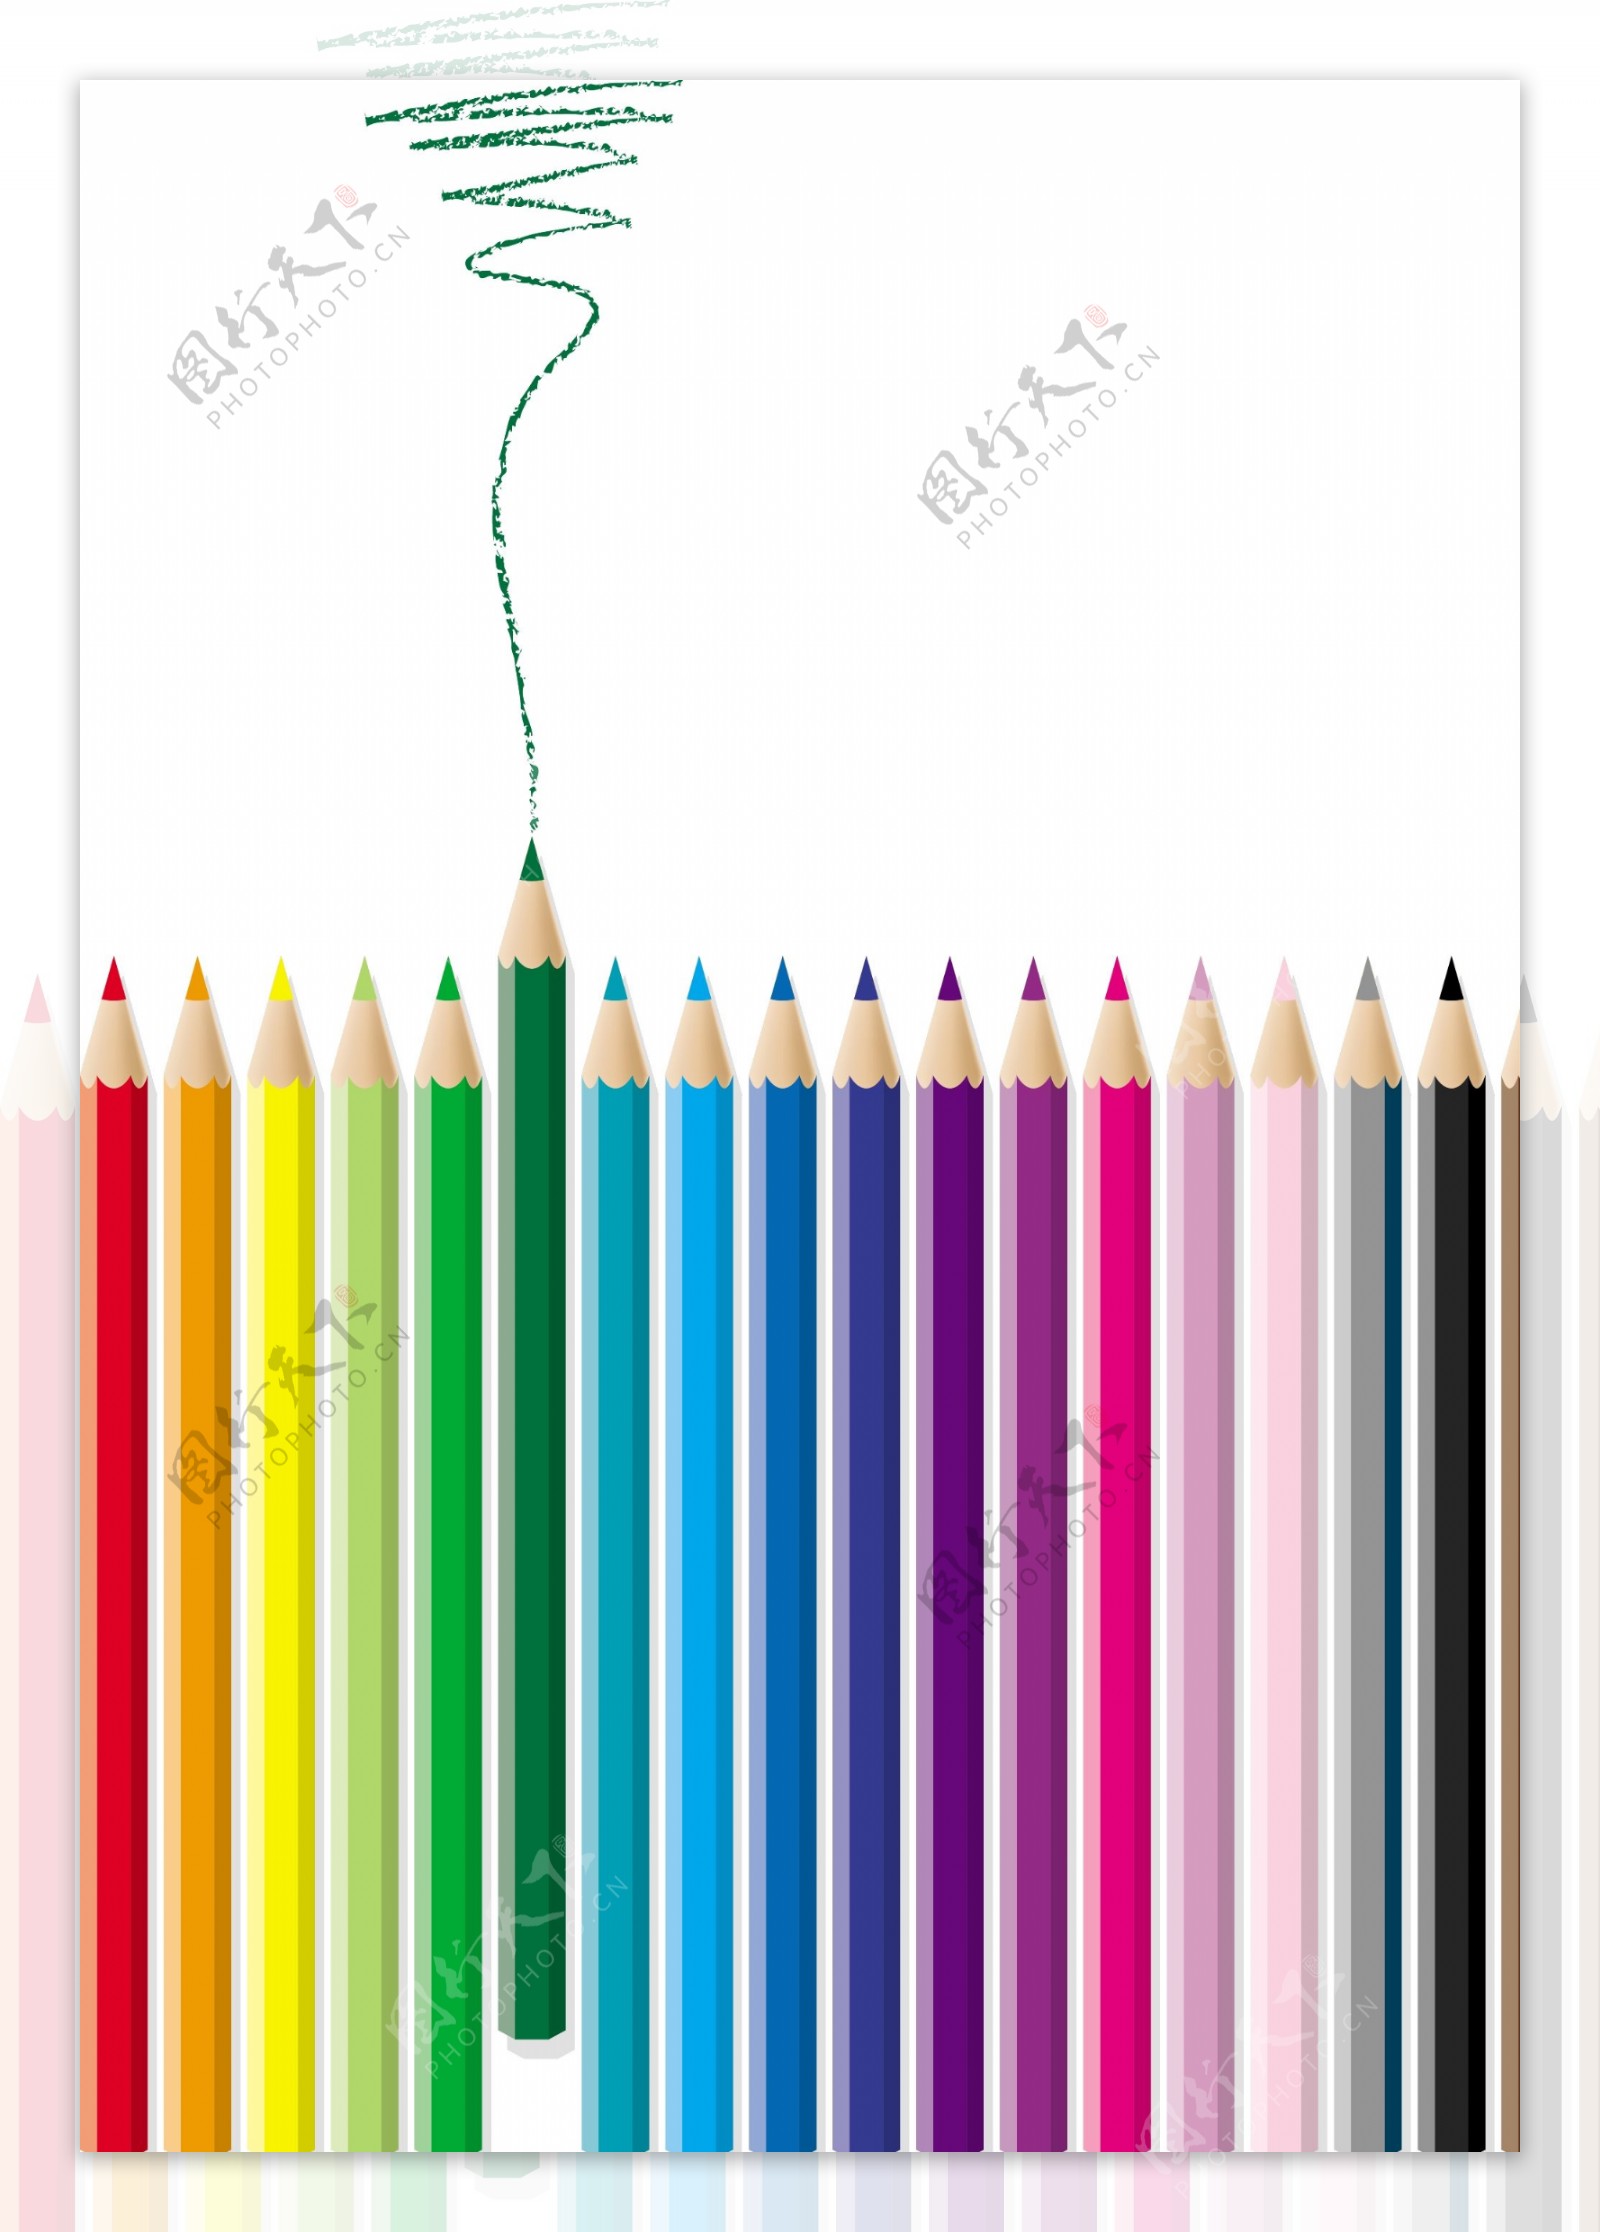 彩色铅笔组合矢量素材